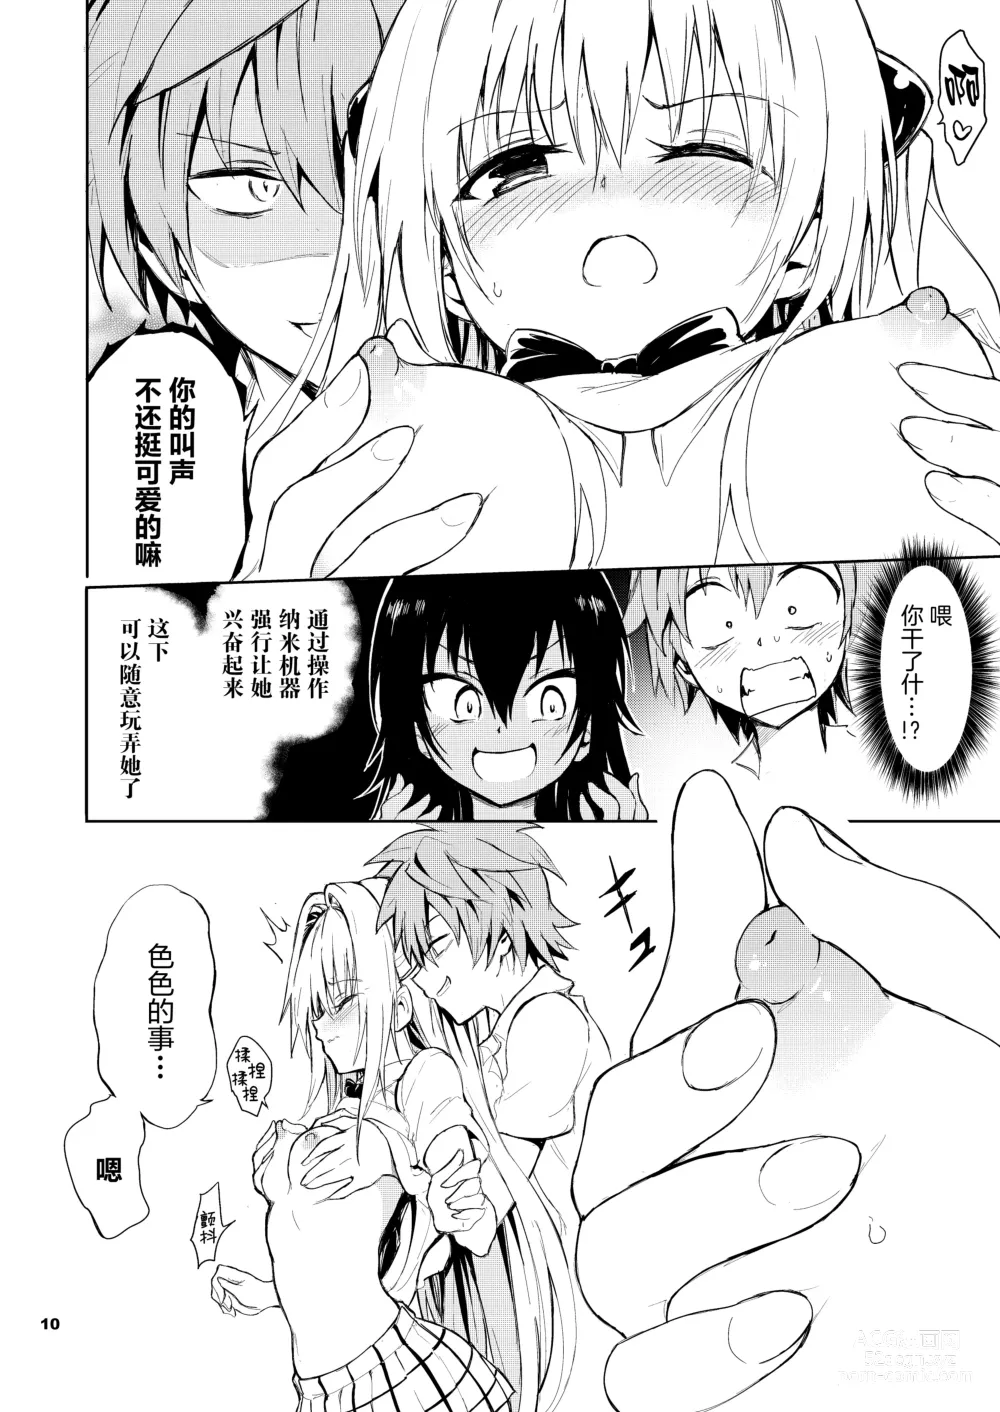 Page 11 of doujinshi Ecchii no wa Kirai desu ka?